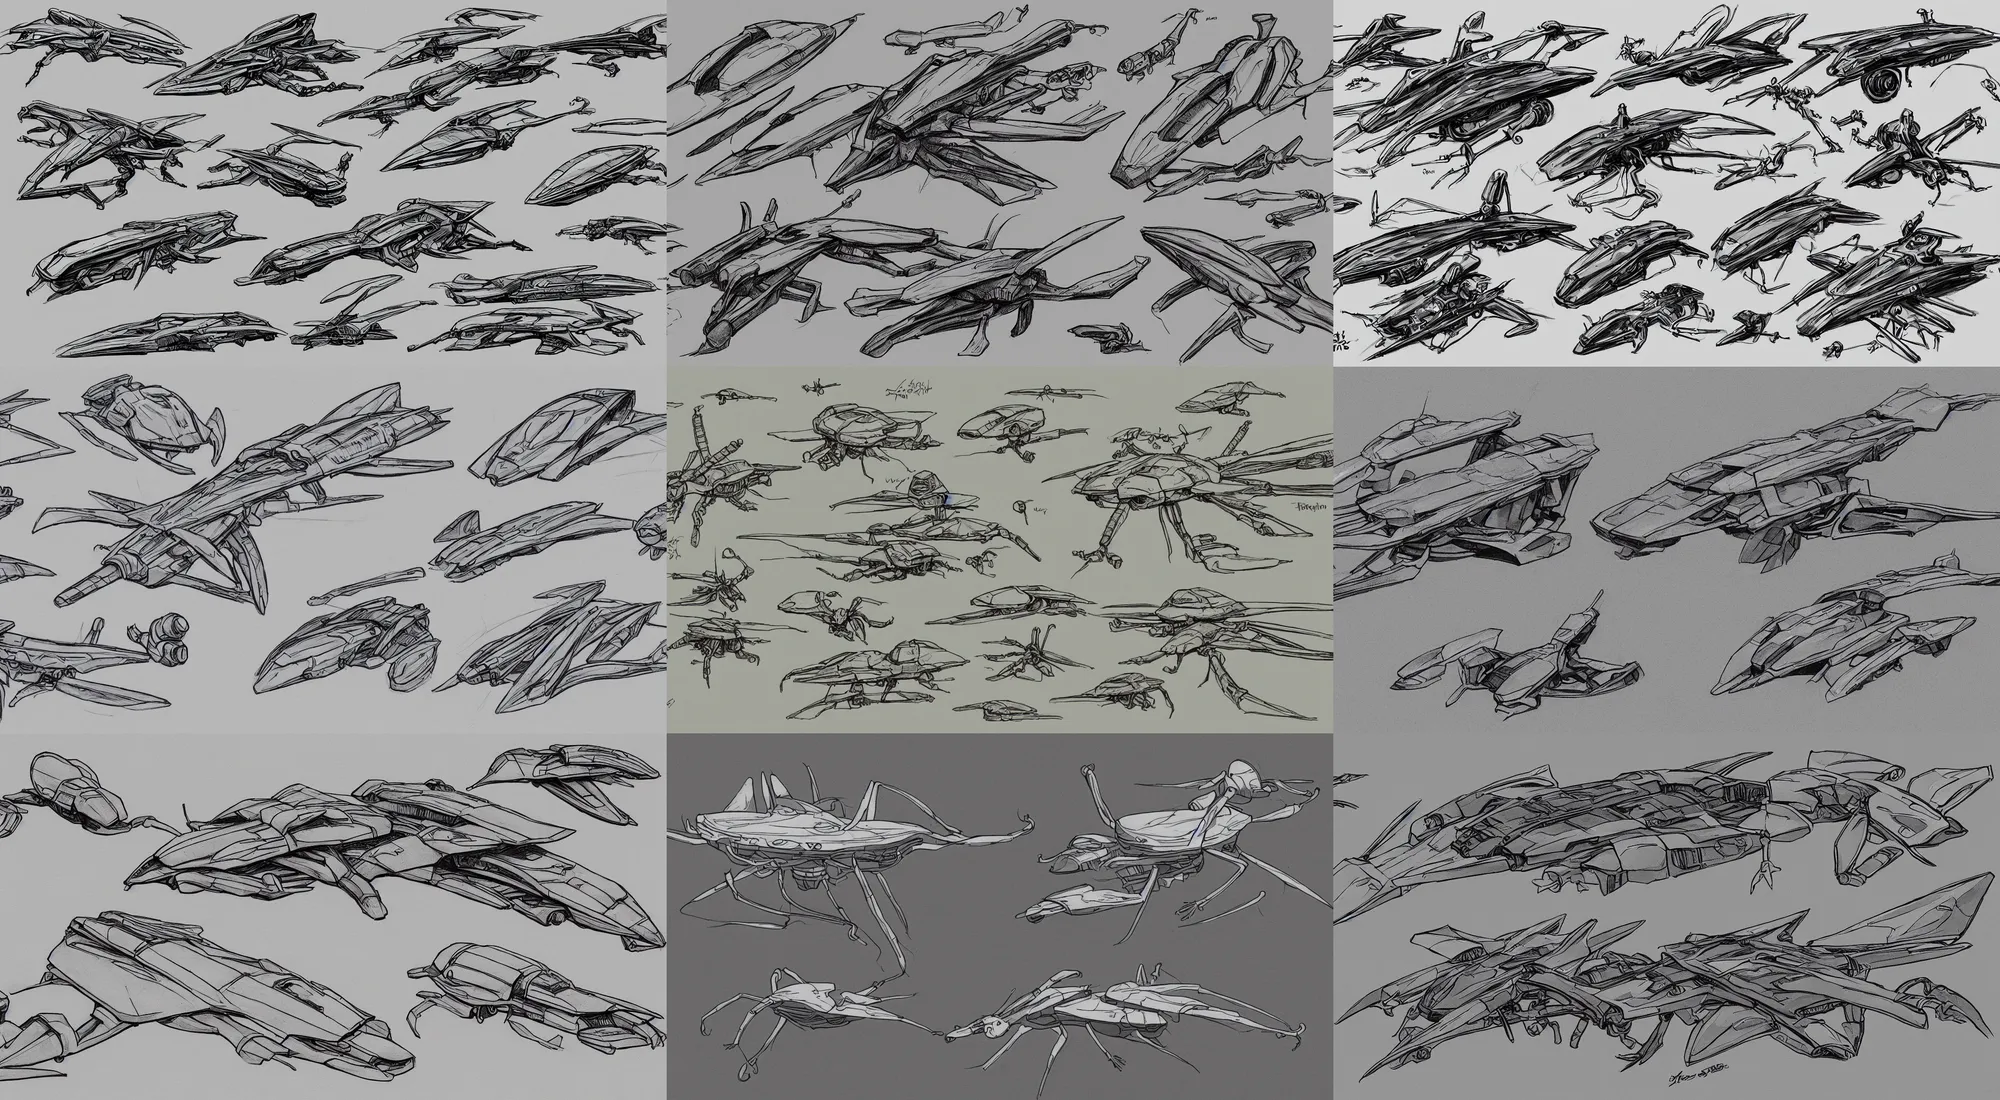 Prompt: mantis spaceship sketches